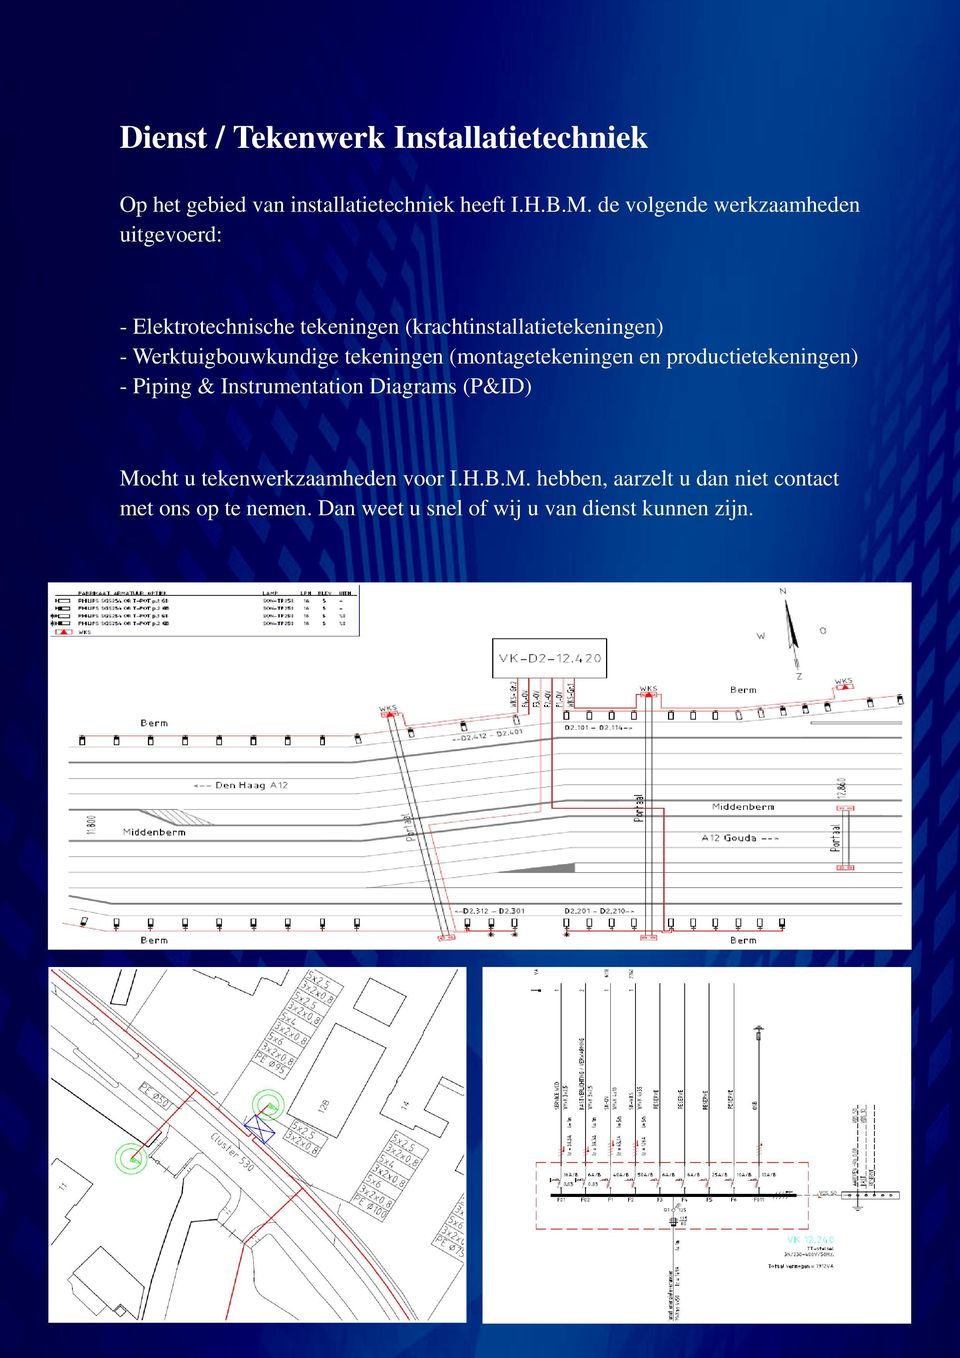 Werktuigbouwkundige tekeningen (montagetekeningen en productietekeningen) - Piping & Instrumentation Diagrams